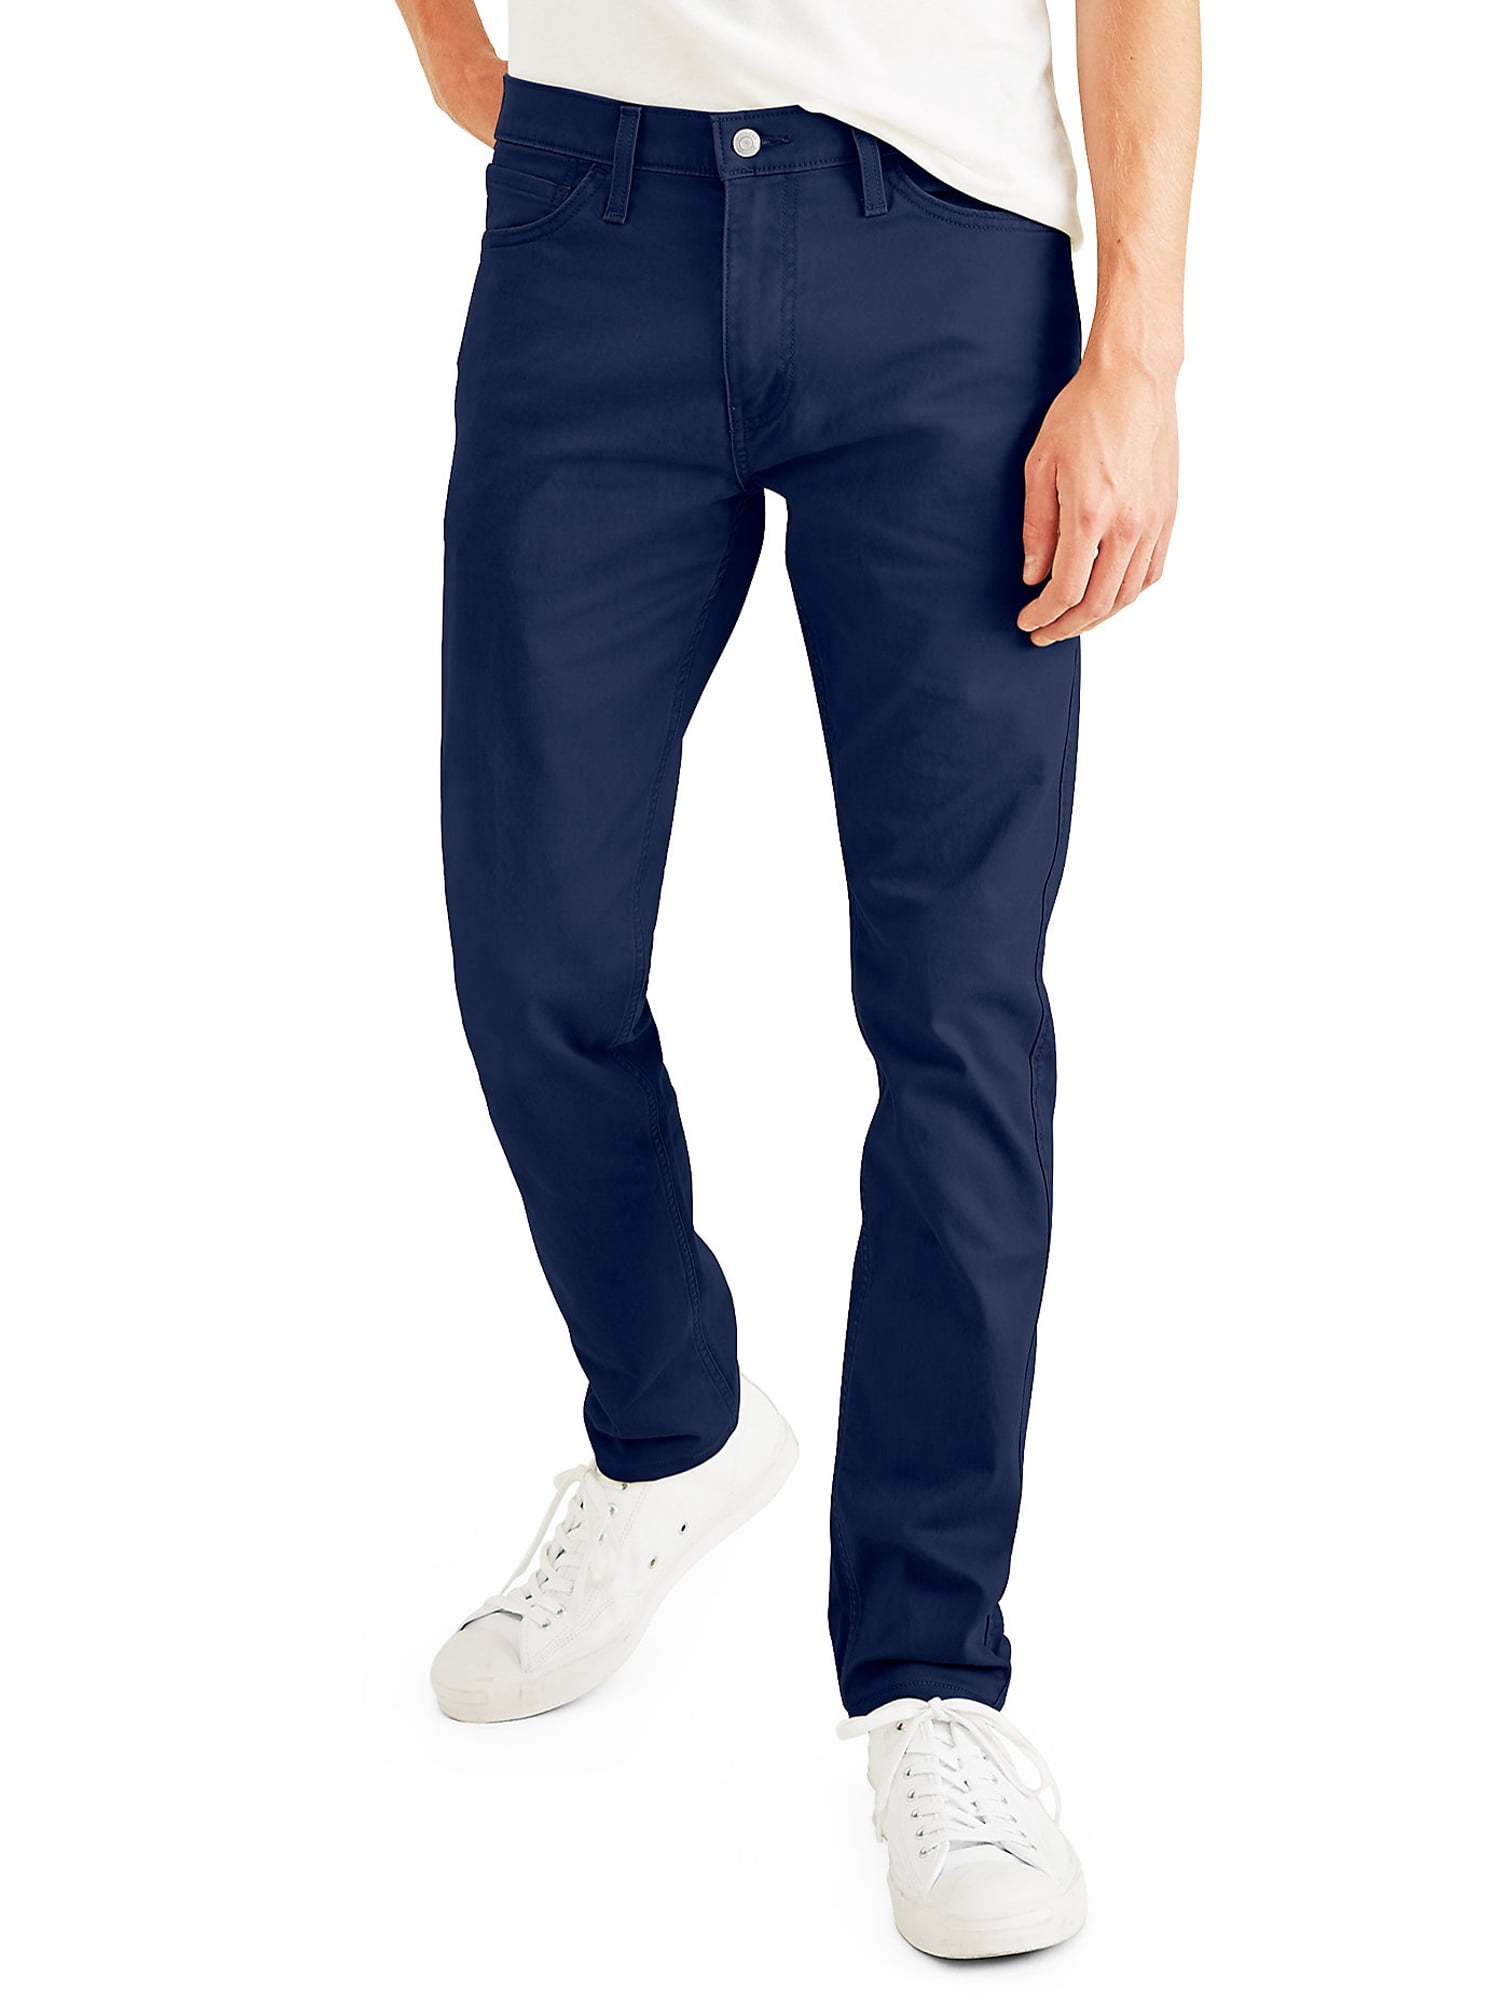 Dockers Men's Slim Fit Jean Cut All Seasons Tech Pants 